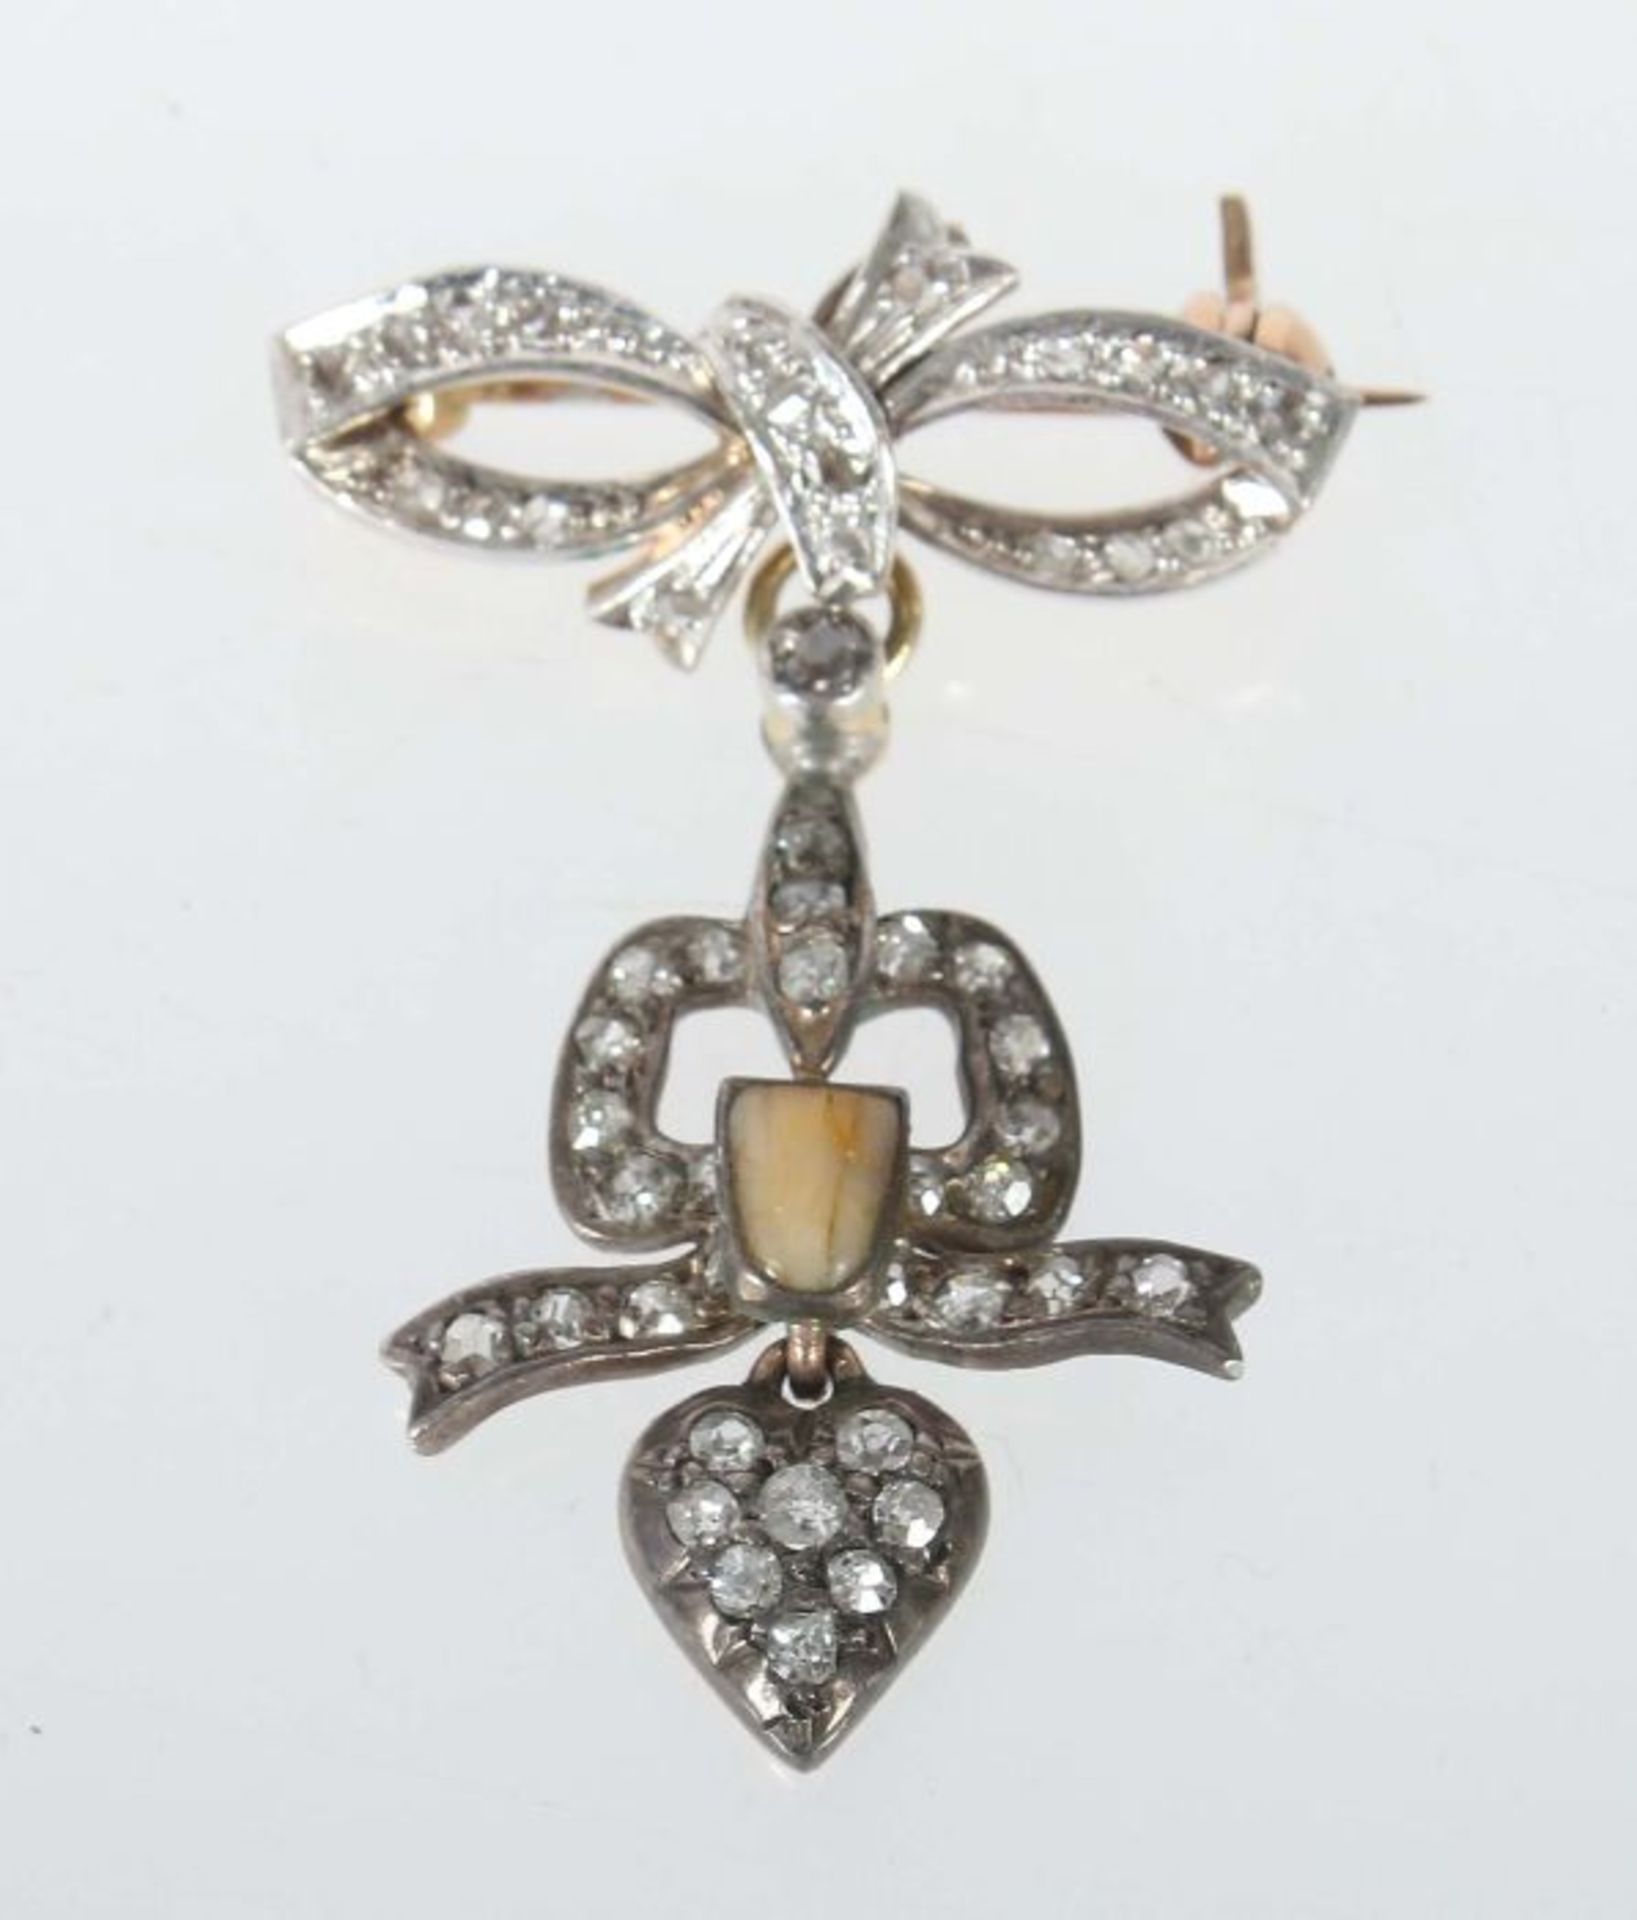 Art-Nouveau-Broscheum 1900, Gelbgold 750/Silber, kleine Brosche in Form einer Schleife besetzt mit